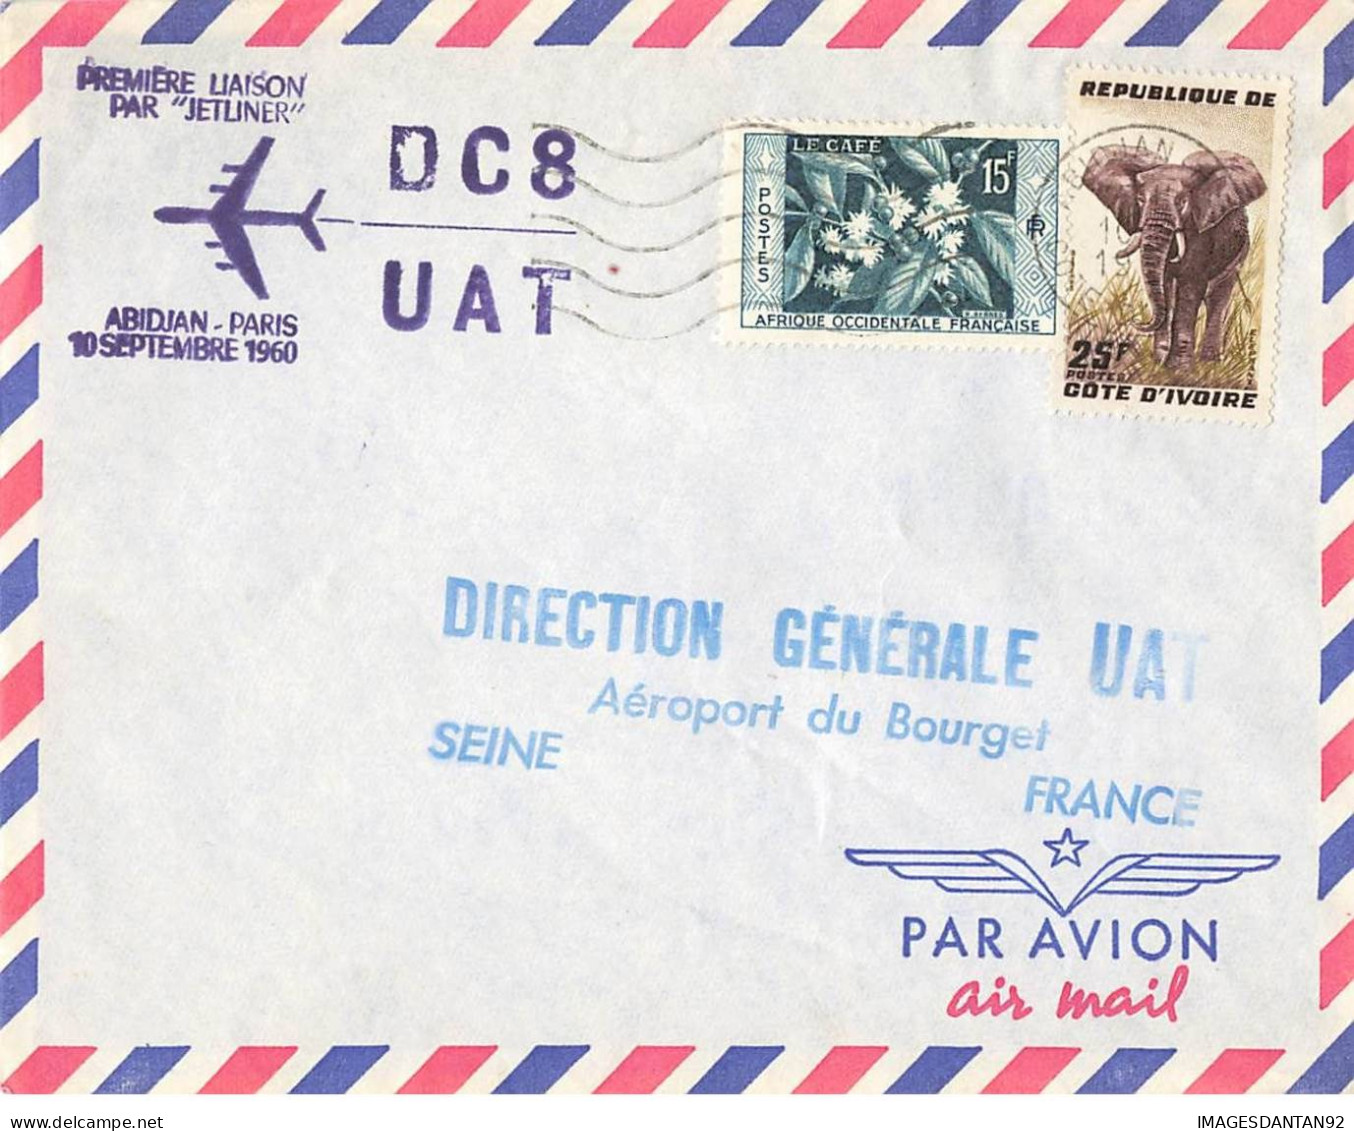 FRANCE #36403 AIR FRANCE ABIDJIAN PARIS 1ERE LIAISON JETLINER 1960 - Covers & Documents